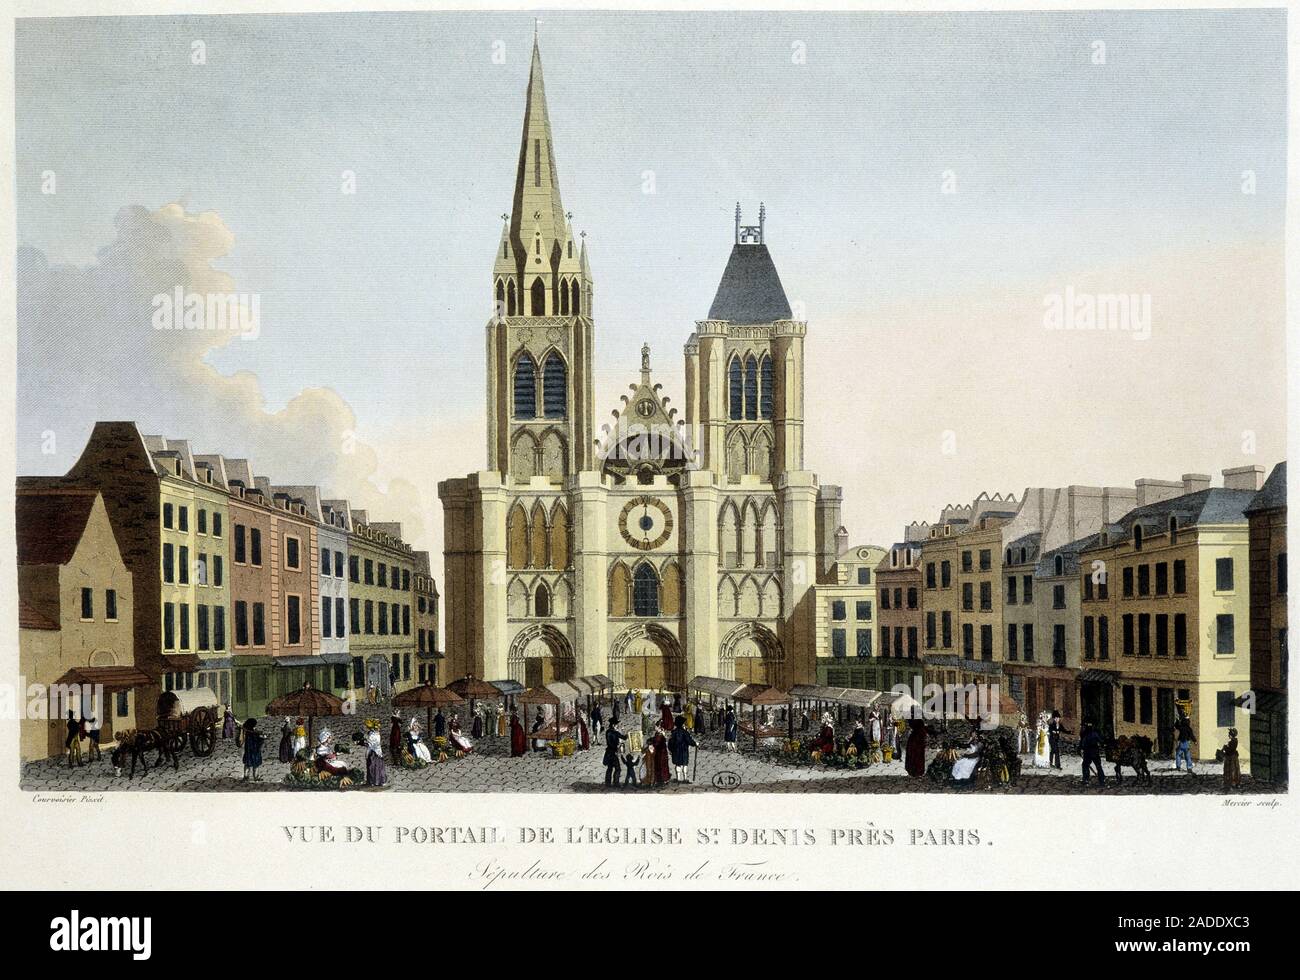 Vue du portail de l'eglise St Denis, pres de Paris, sepulture des rois de France, et marche sur le parvis - in 'Paris par Courvoisier', 1827 Stock Photo